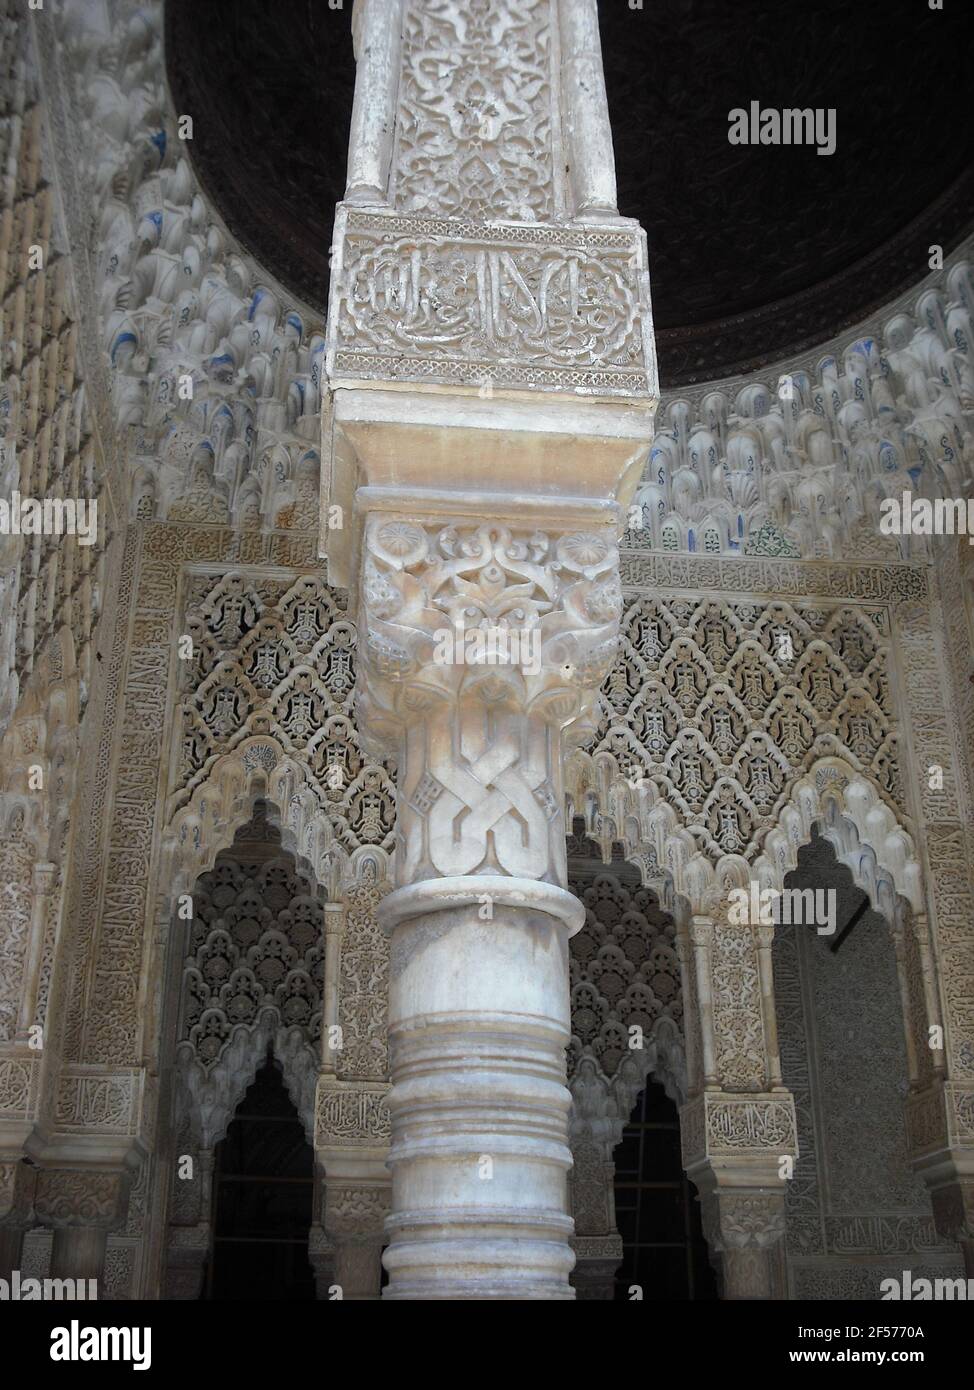 Architettura islamica, archi in pietra intagliata e fregi. Palazzo dell'Alhambra, Granada, Spagna. Foto Stock